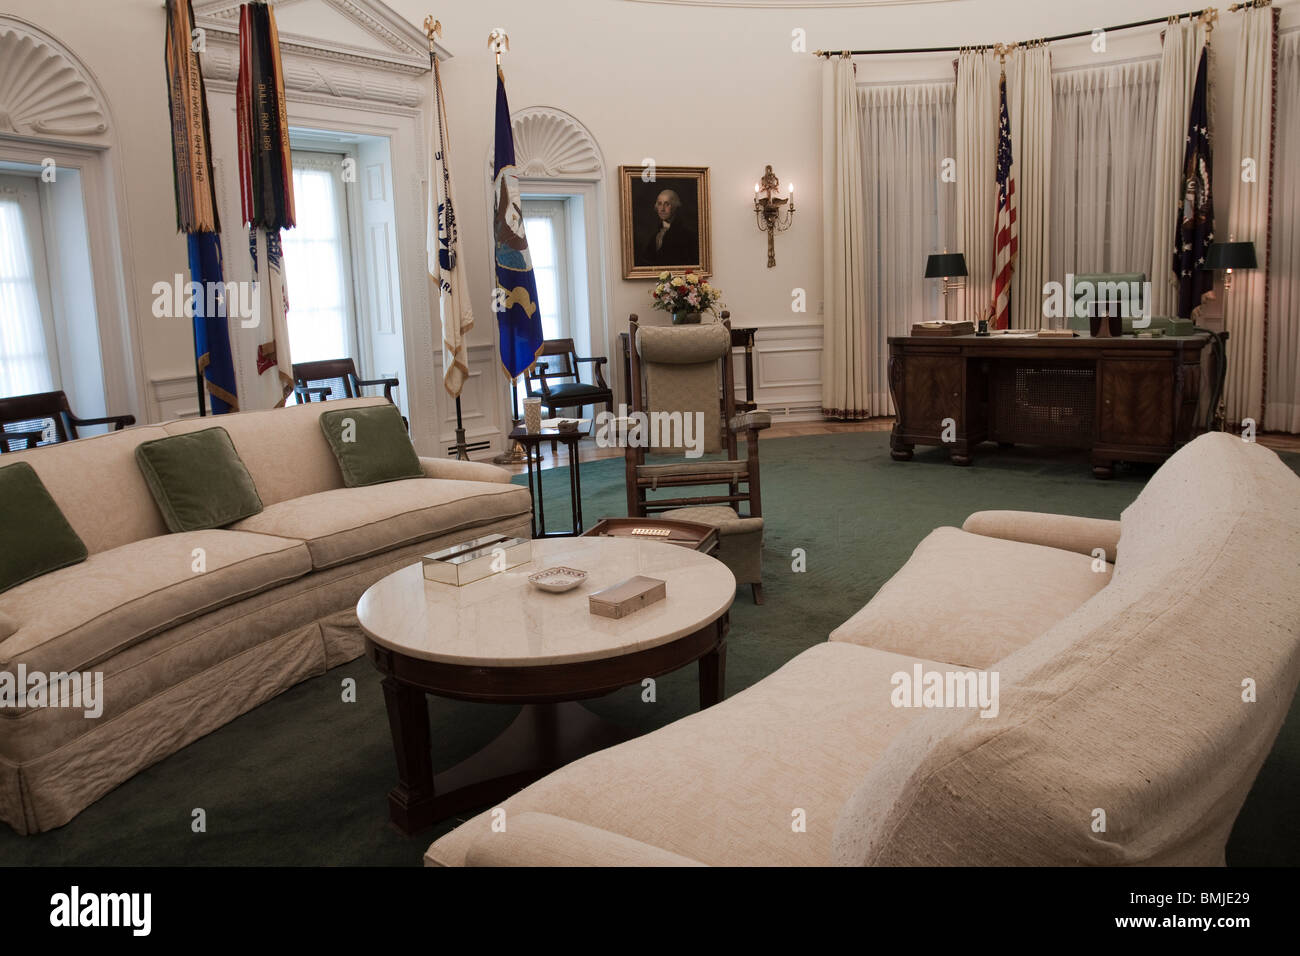 Réplica de la Oficina Oval durante el término de LBJ a Lyndon B. Johnson y el museo de la biblioteca Foto de stock